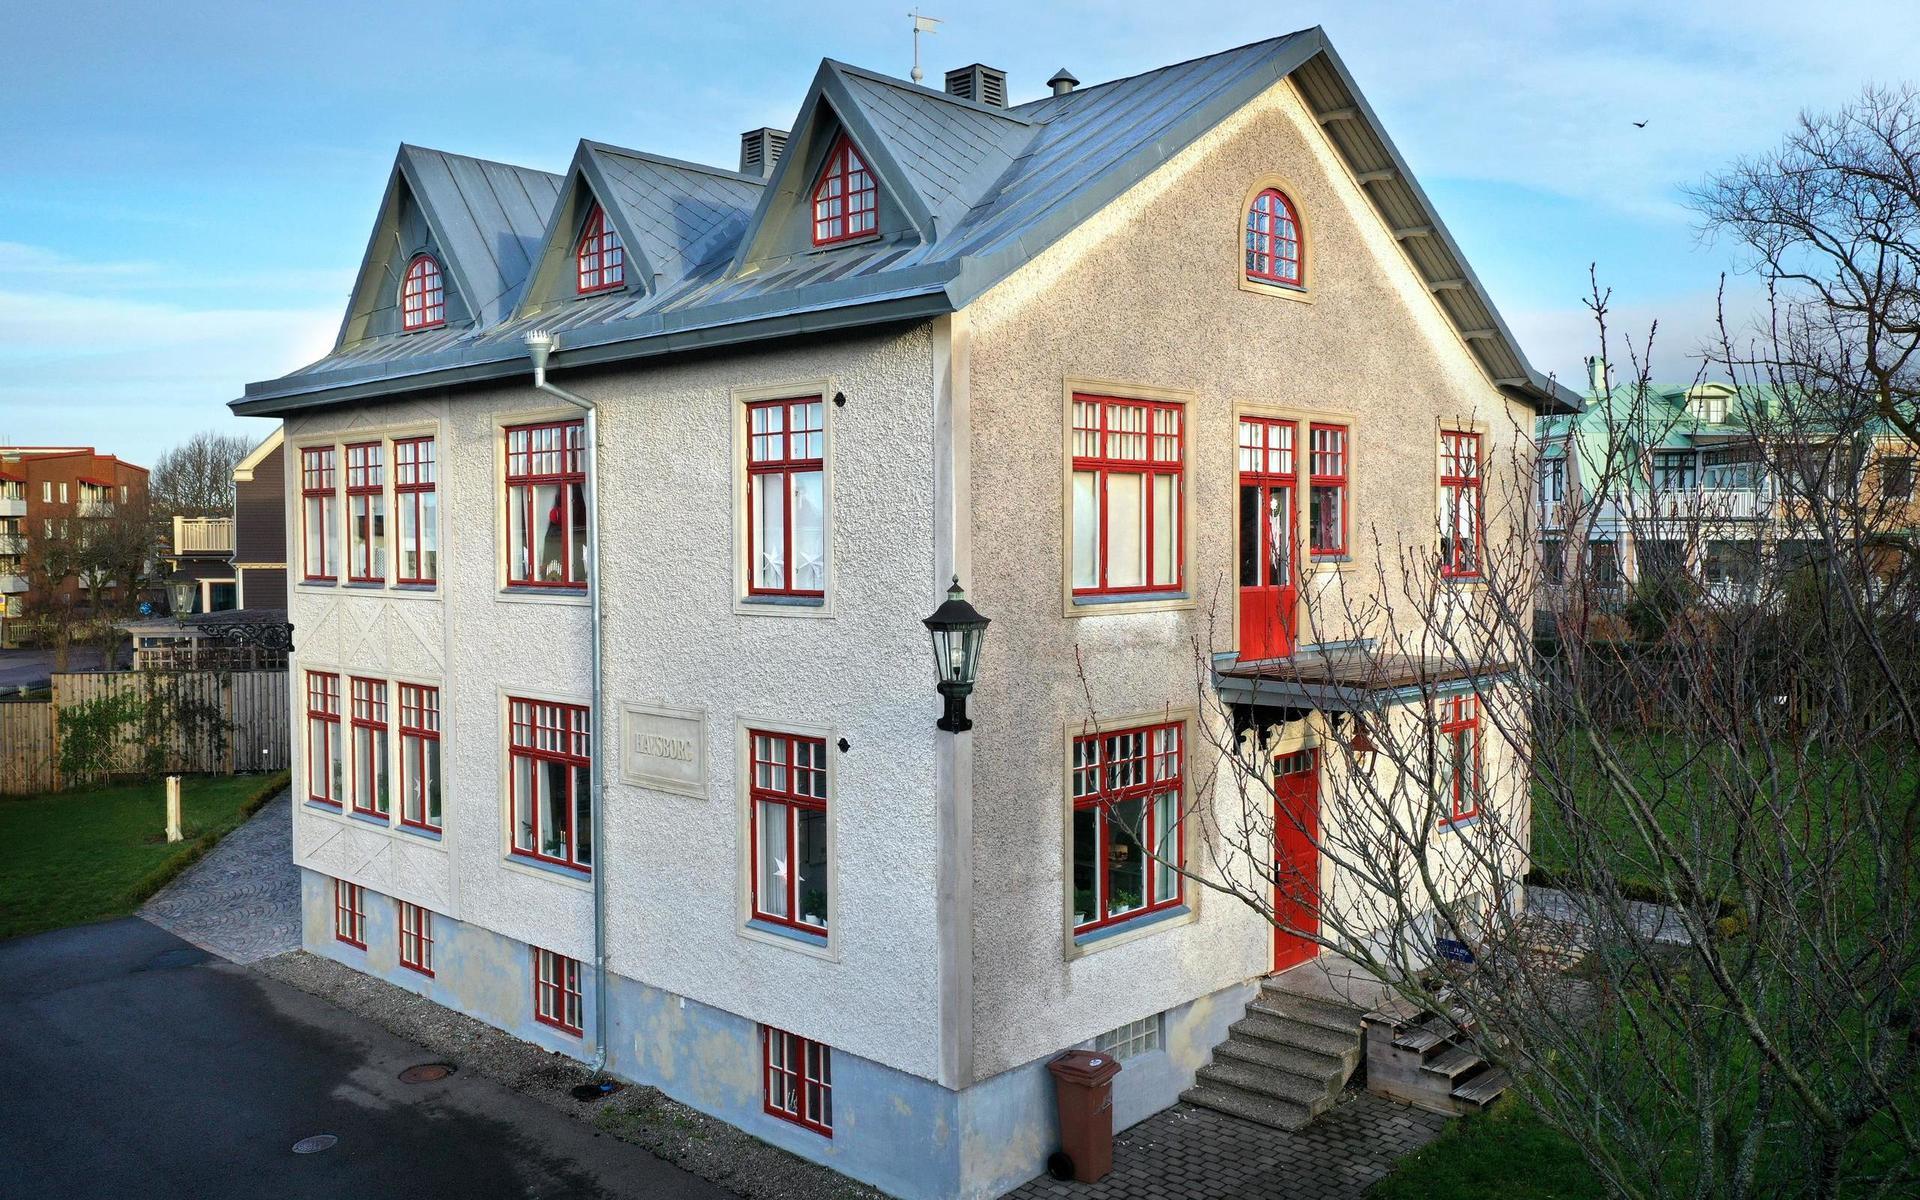 Villa Havsborg och Bertil Uhlin belönades med hembygdsföreningen Gamla Varbergs kulturhistoriska diplom för 2020. ”Det visar ju att det är många som tycker att det är kul att man bevarar den gamla stilen. Annars så ska ju allting vara modernt”, säger Bertil Uhlin.